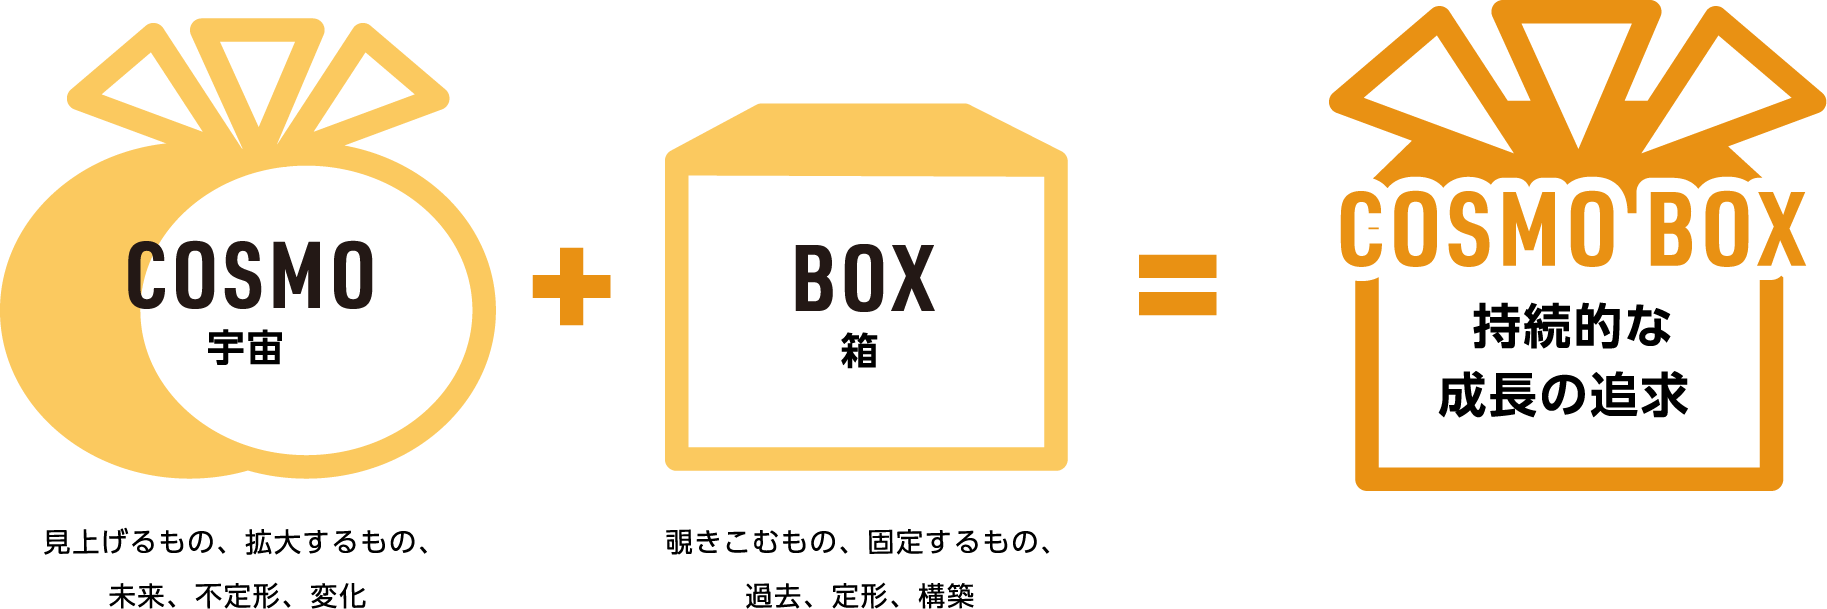 COSMO BOX